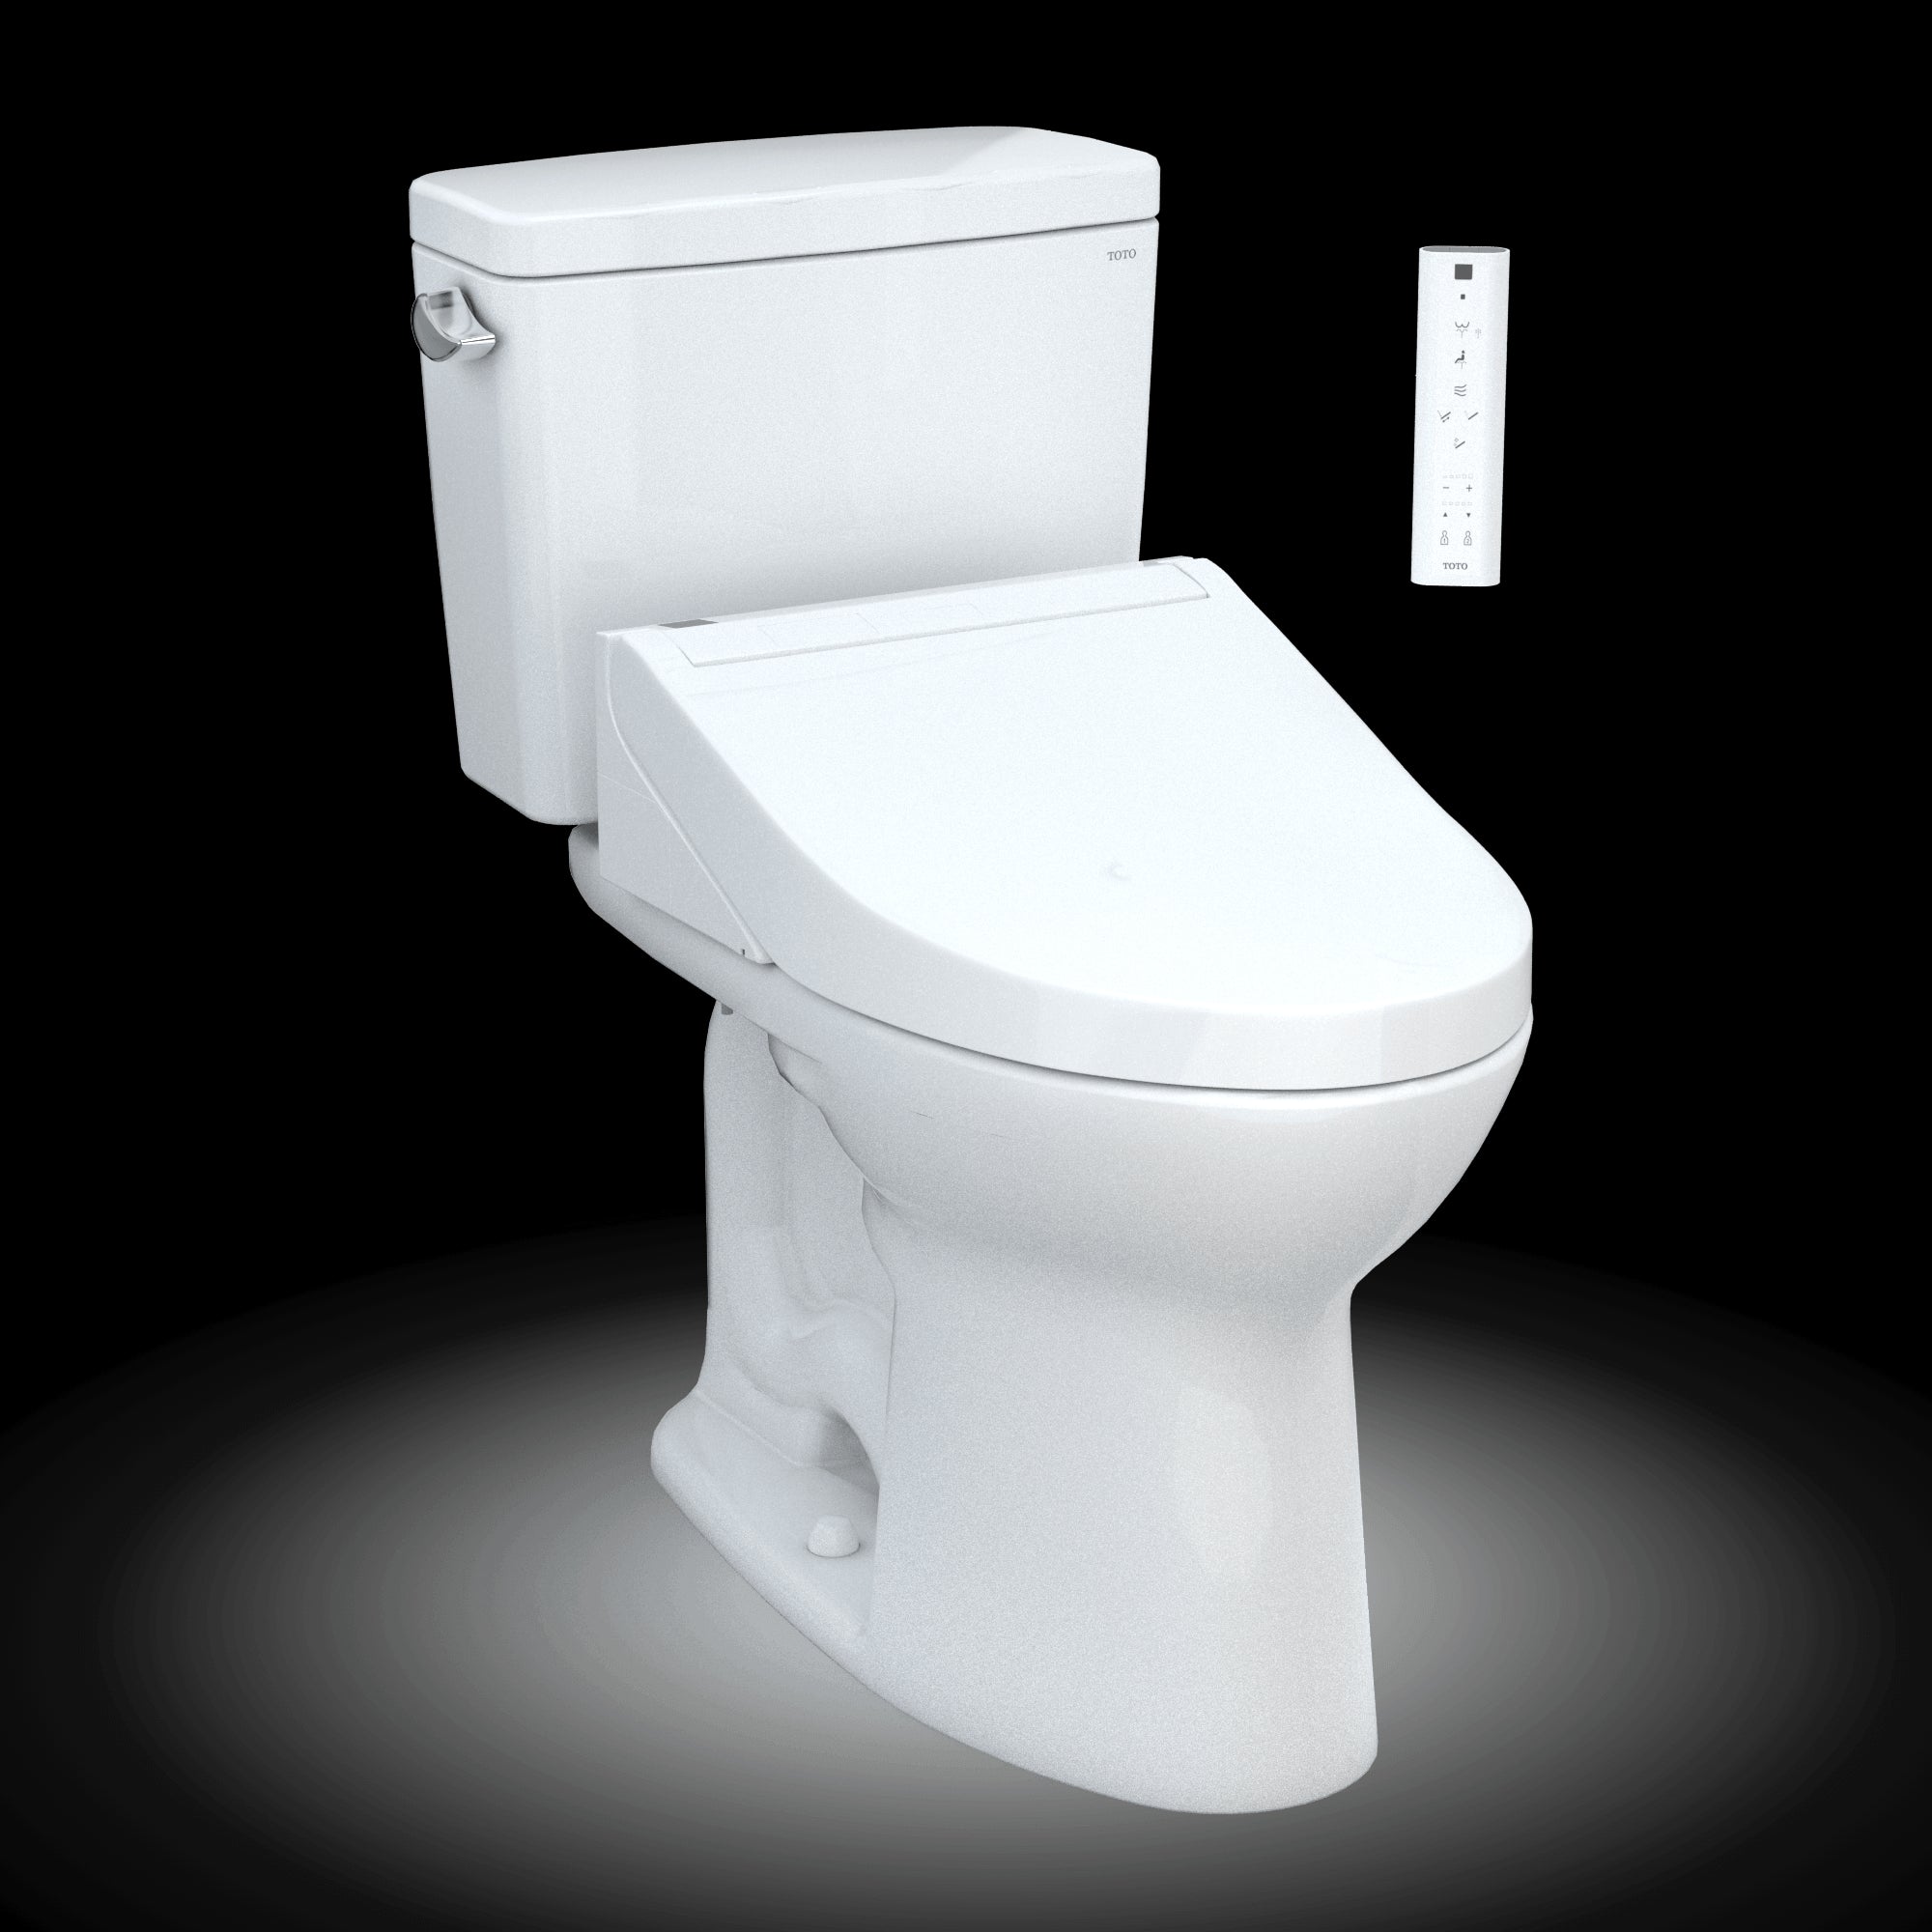 Better solution for tank bolt leaks for Toto toilet?